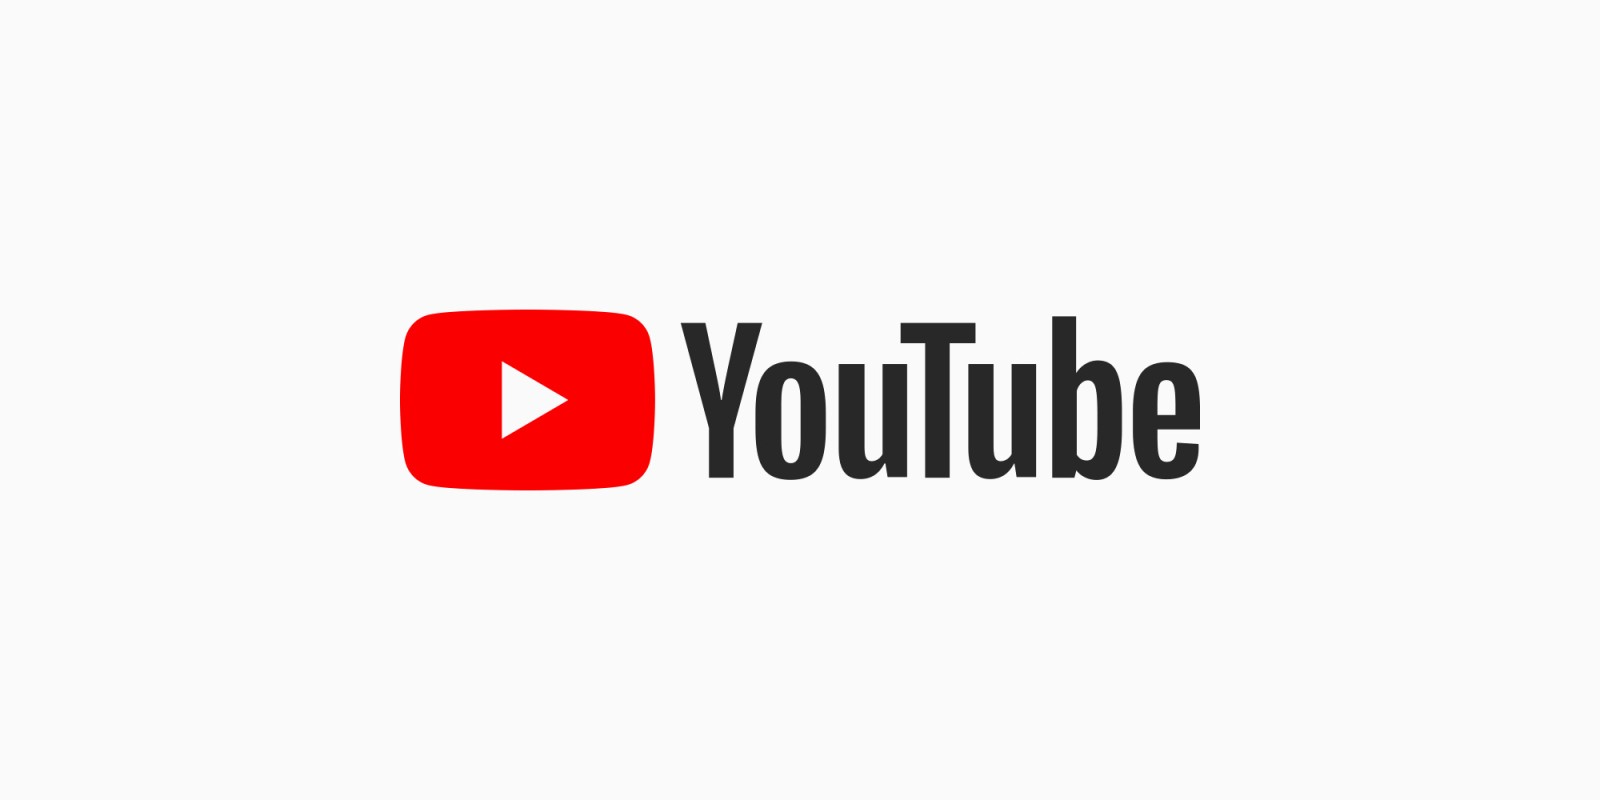 YouTube ประกาศลดคุณภาพการแสดงผลวีดีโอตั้งต้นเหลือระดับ SD ทั่วโลก เป็นเวลา 1 เดือน